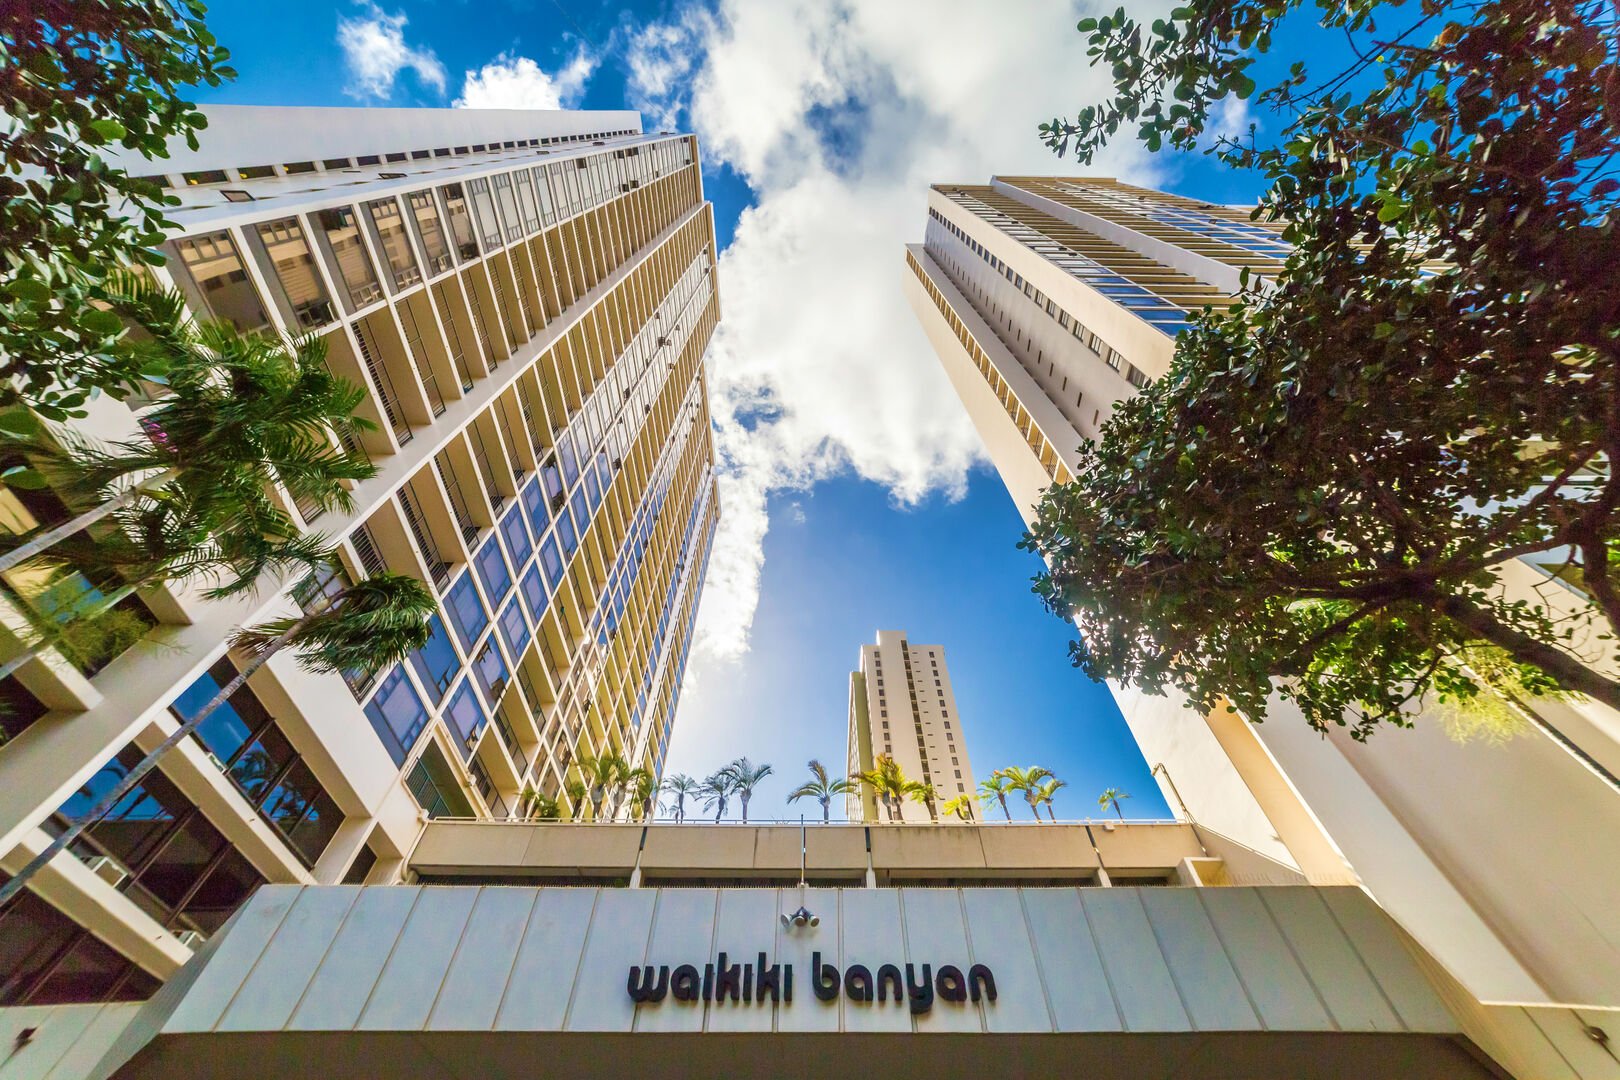 Waikiki Banyan building